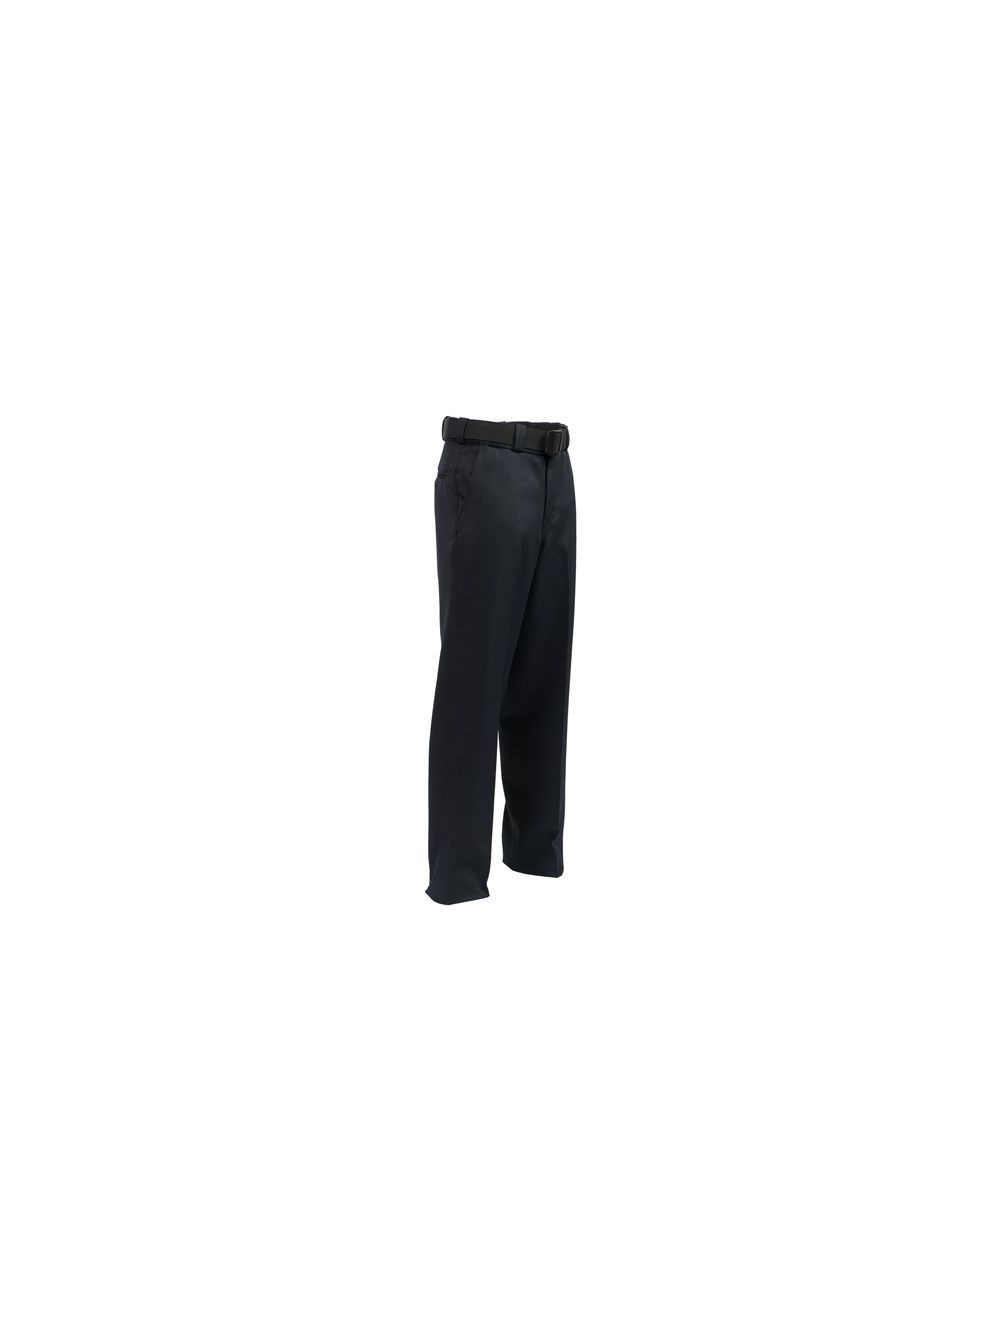 TexTrop2 4-Pocket Pants